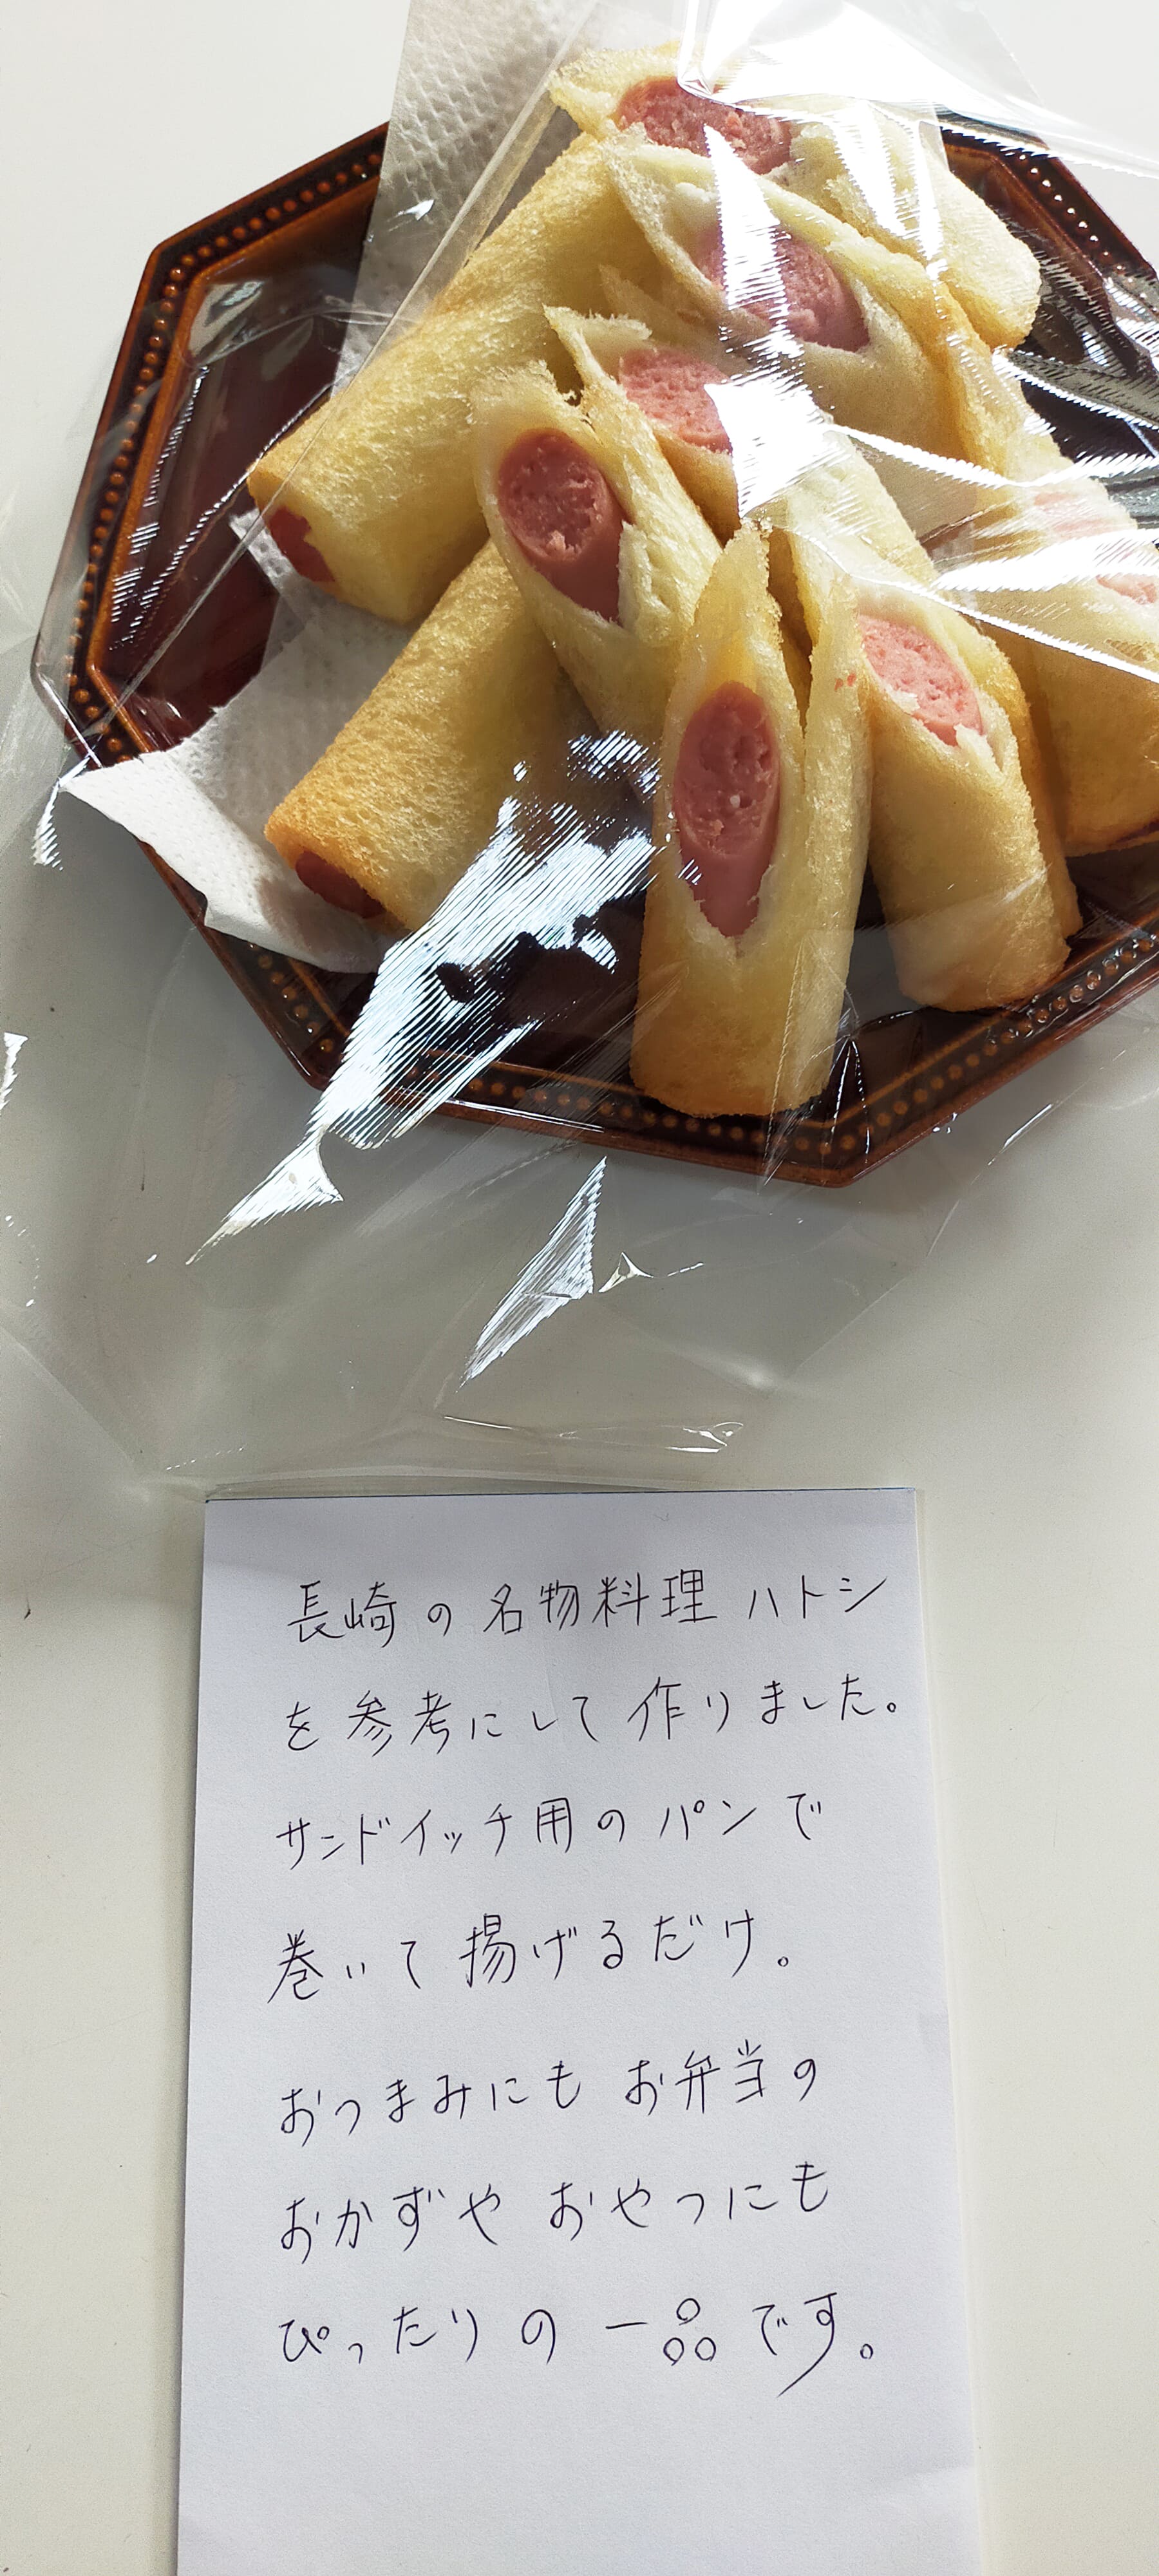 長崎名物料理ハトシを参考にしたサンドイッチ用のパンで巻いて揚げるだけ